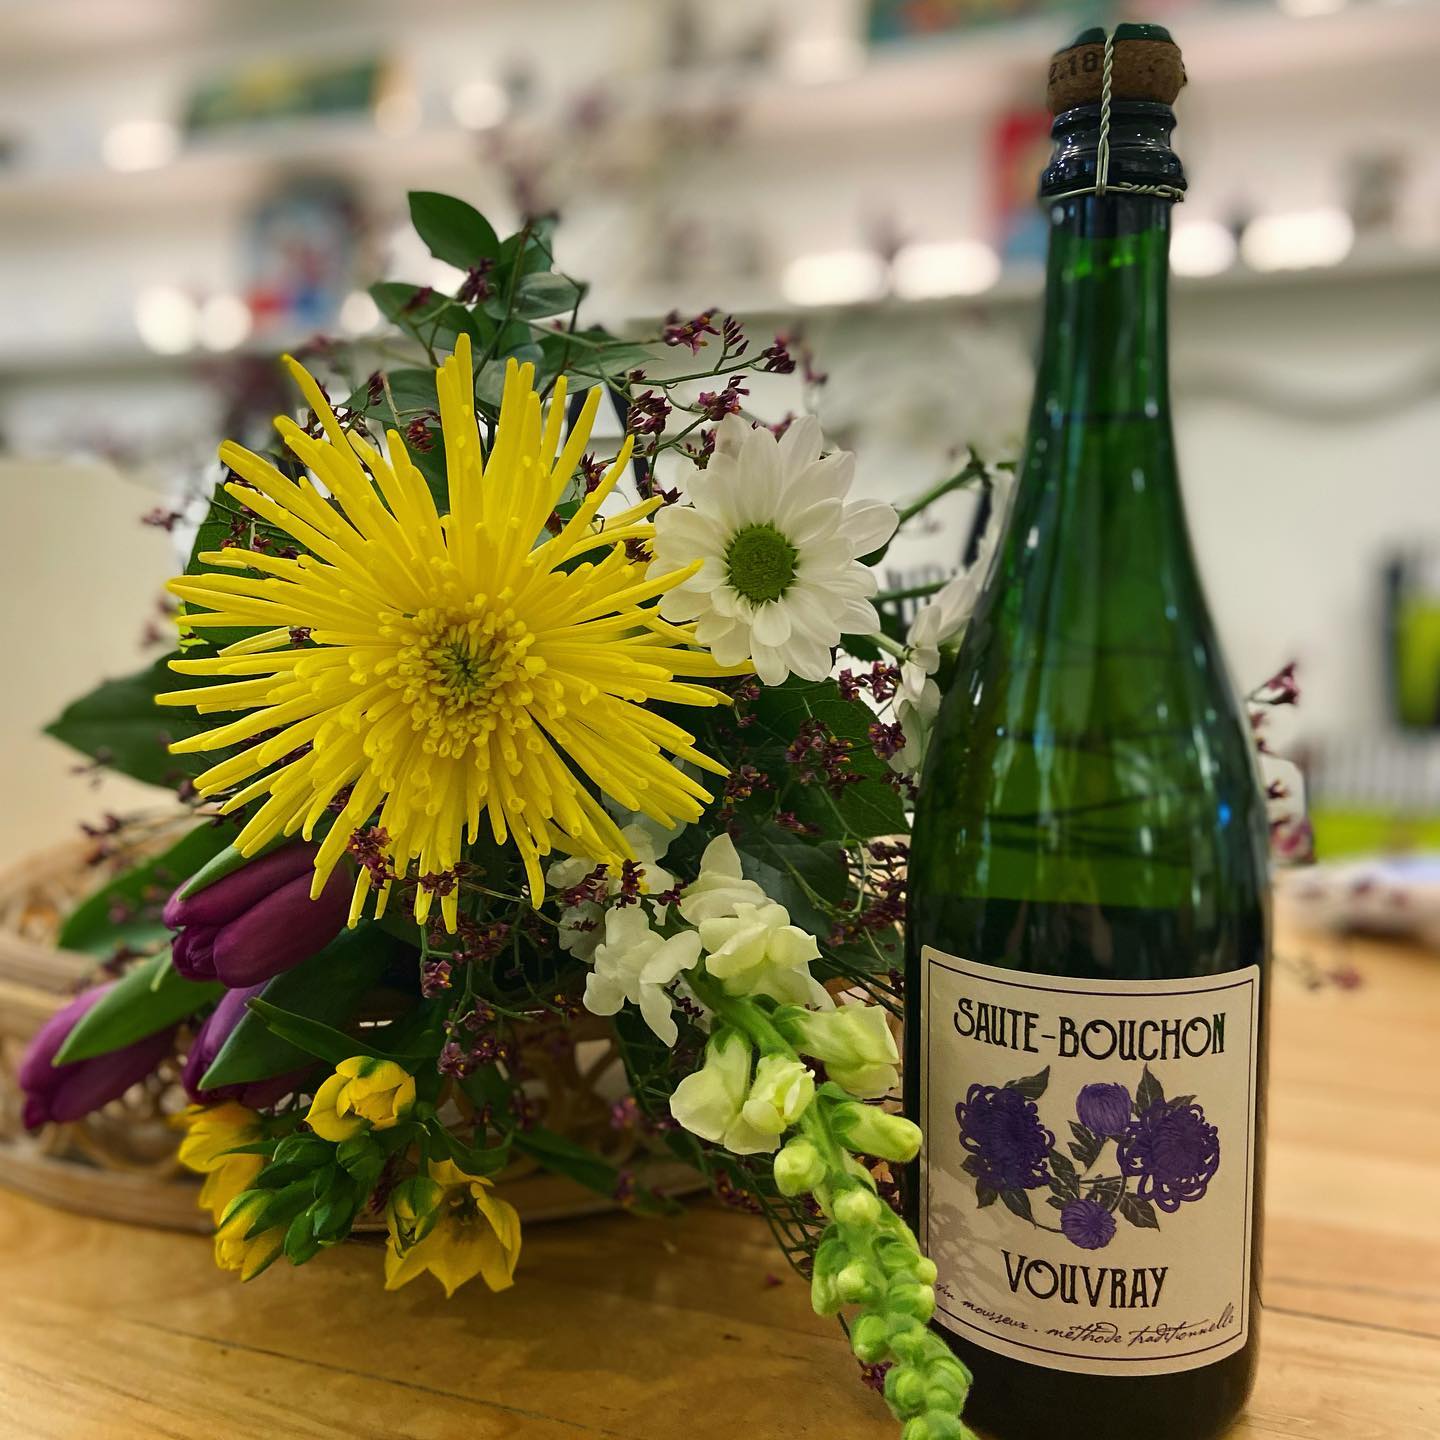 Concours Gagnez un vin mousseux Saute-Bouchon Vouvray + un bouquet de fleurs signé Charlot !